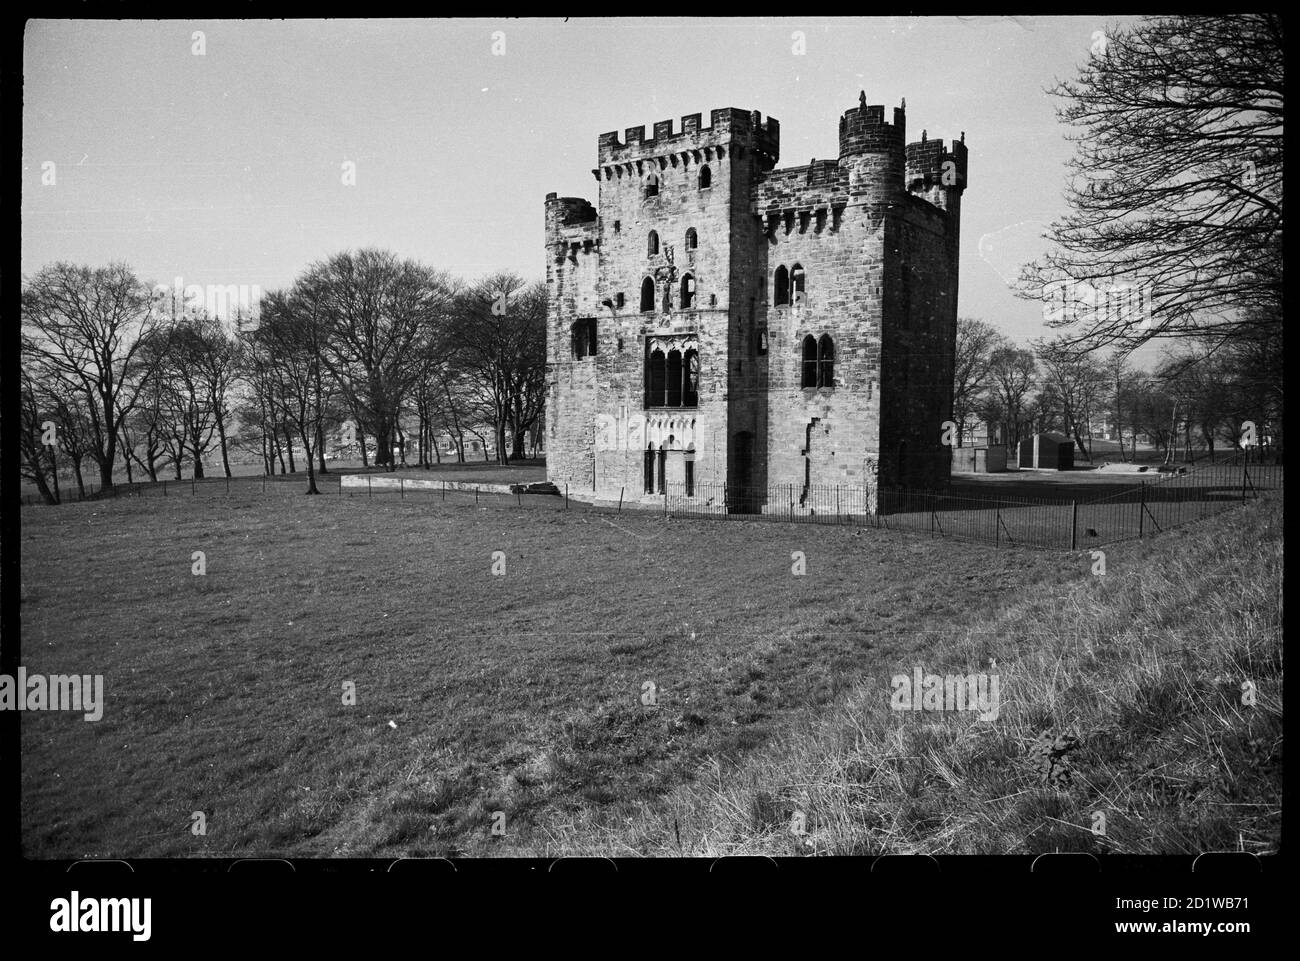 Hylton Castle, Sunderland. Eine Außenansicht von Hylton Castle, von Nordosten gesehen und zeigt die östliche Erhebung des befestigten Turmhauses. Stockfoto